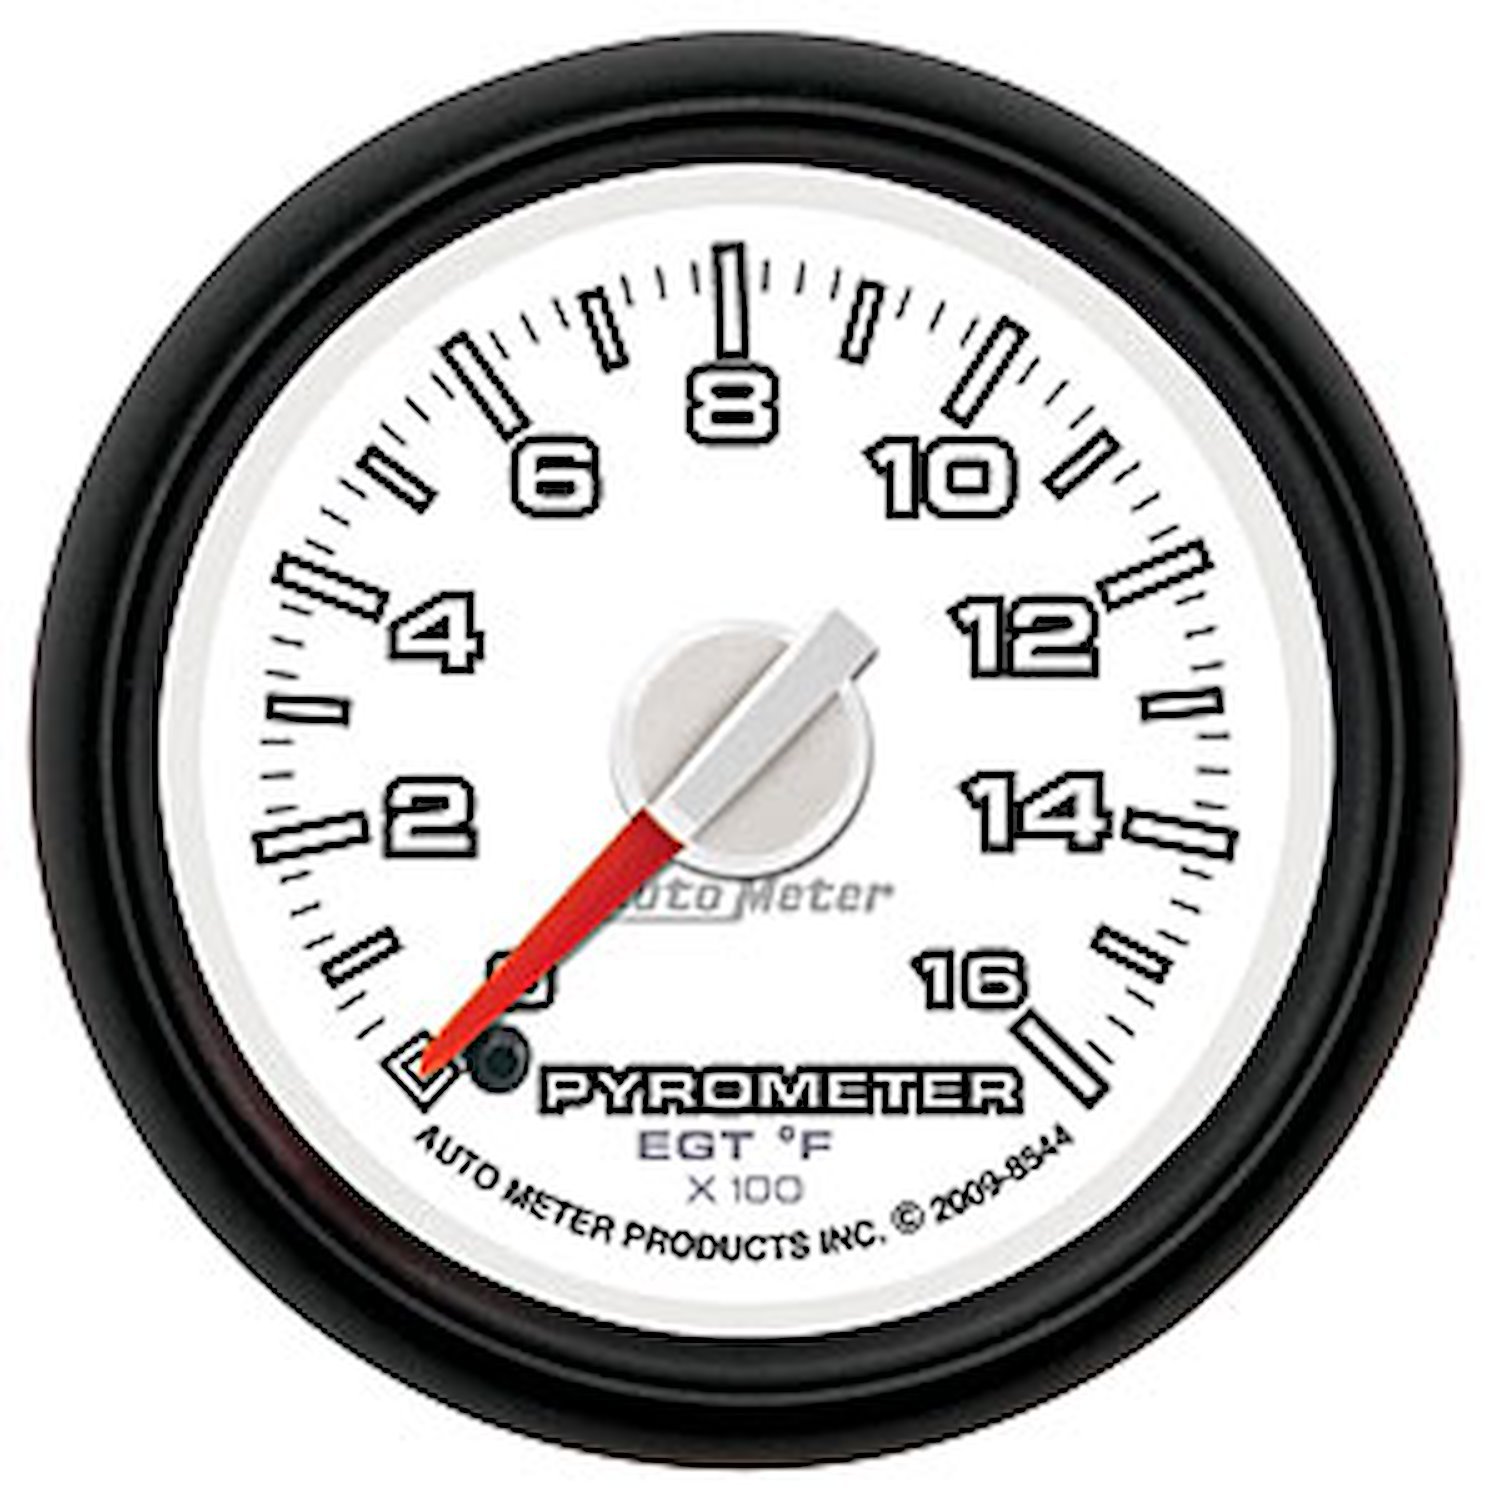 Gen 3 Dodge Factory Match Pyrometer 2-1/16